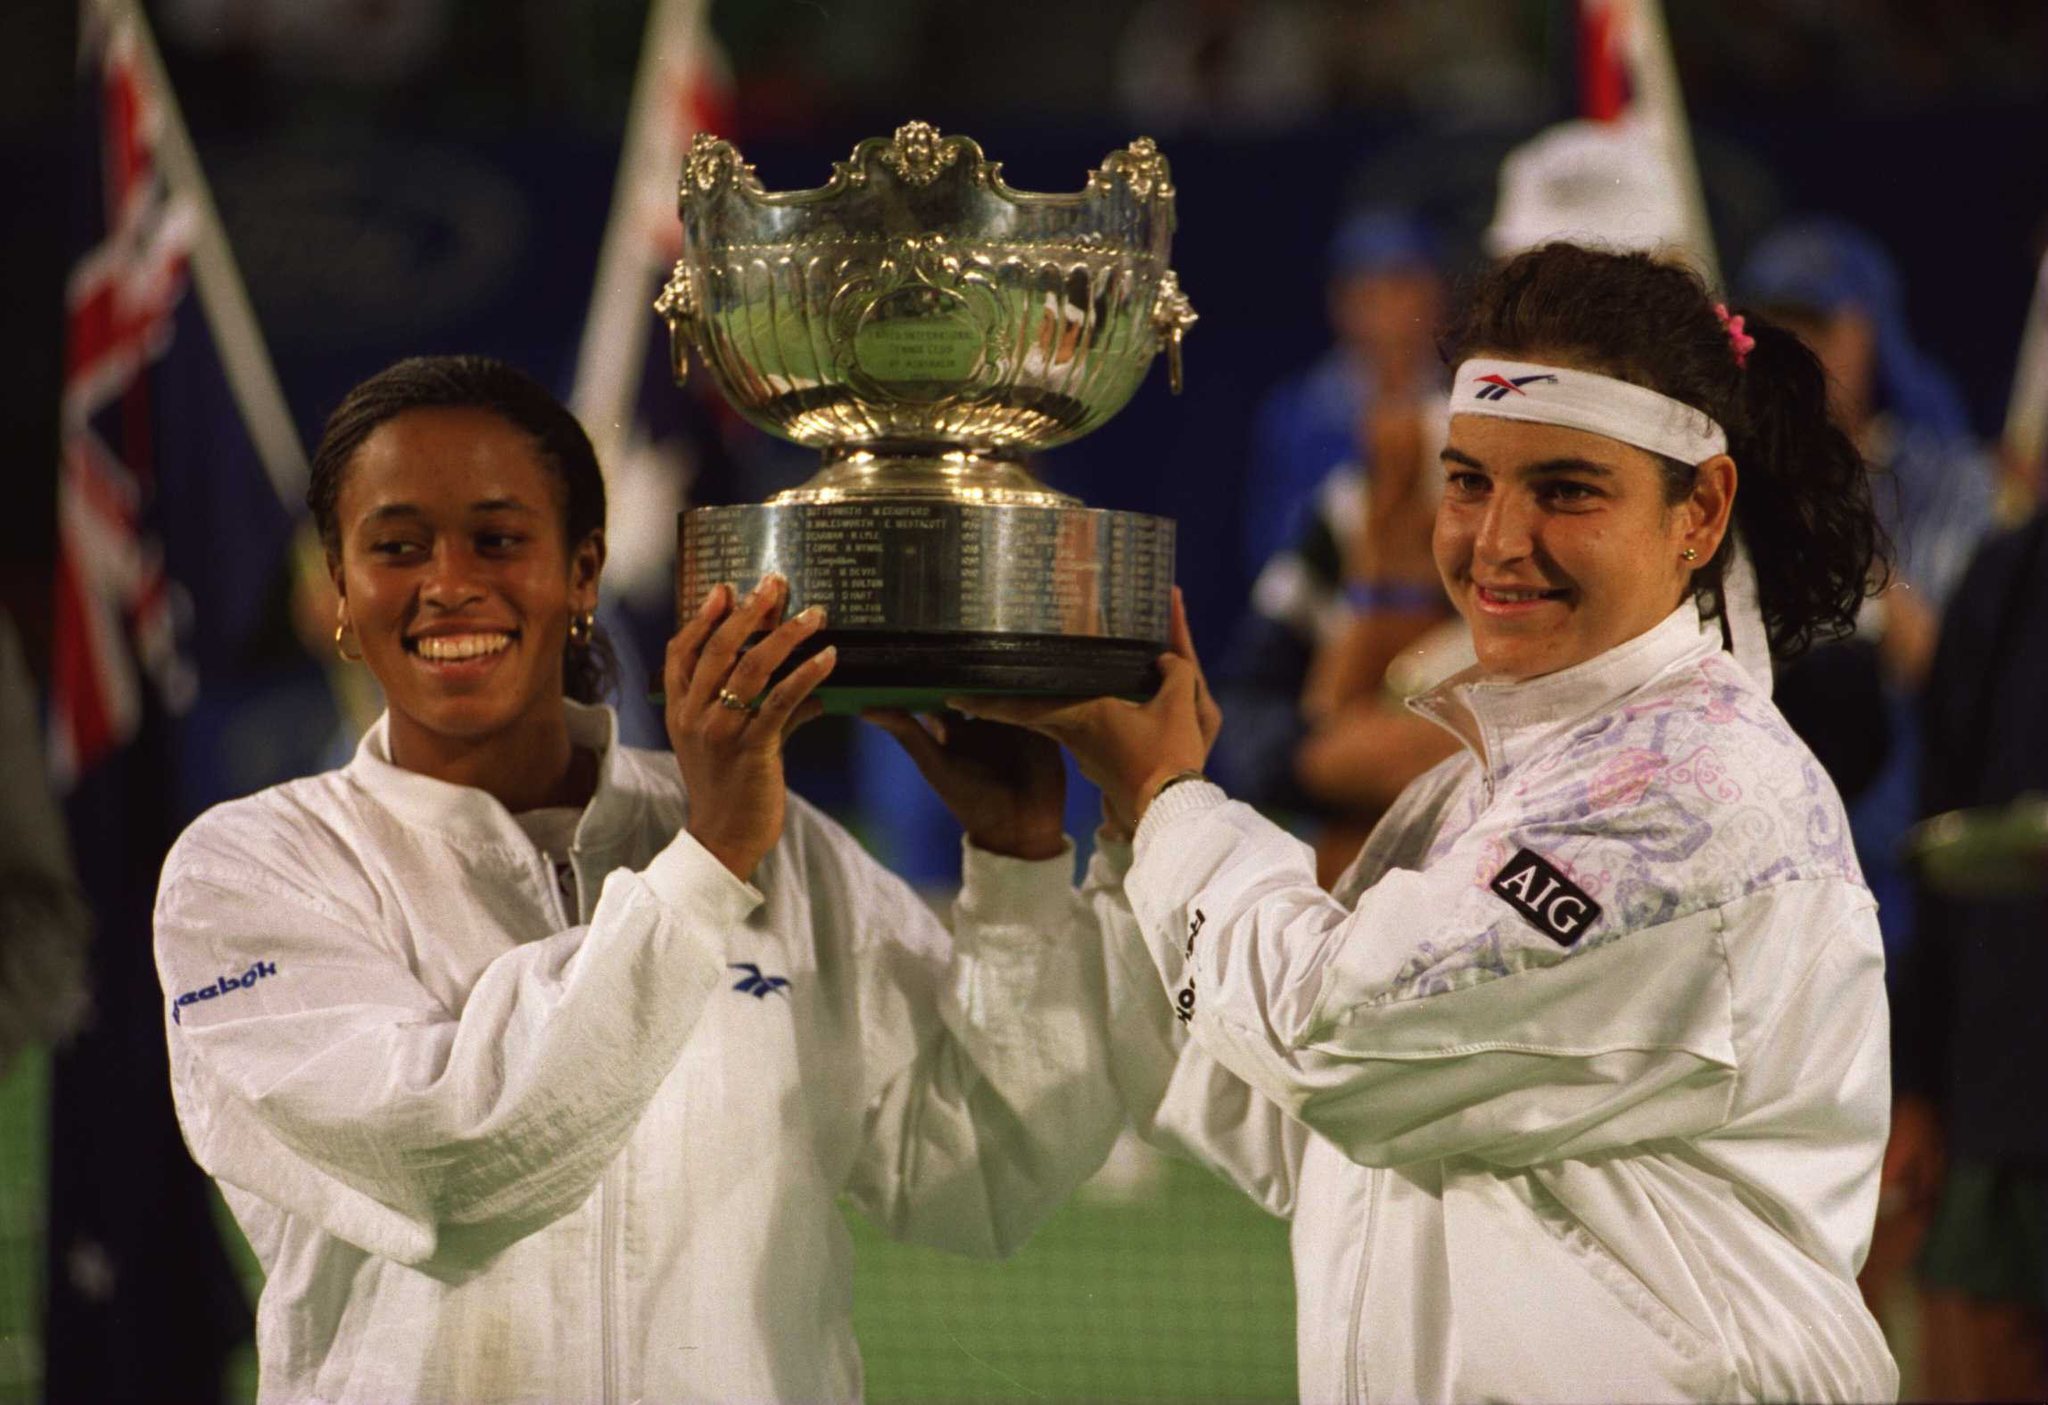 Arantxa Snchez Vicario levanta el trofeo de dobles femeninos de 1996 junto a su compaera Chanda Rubin.